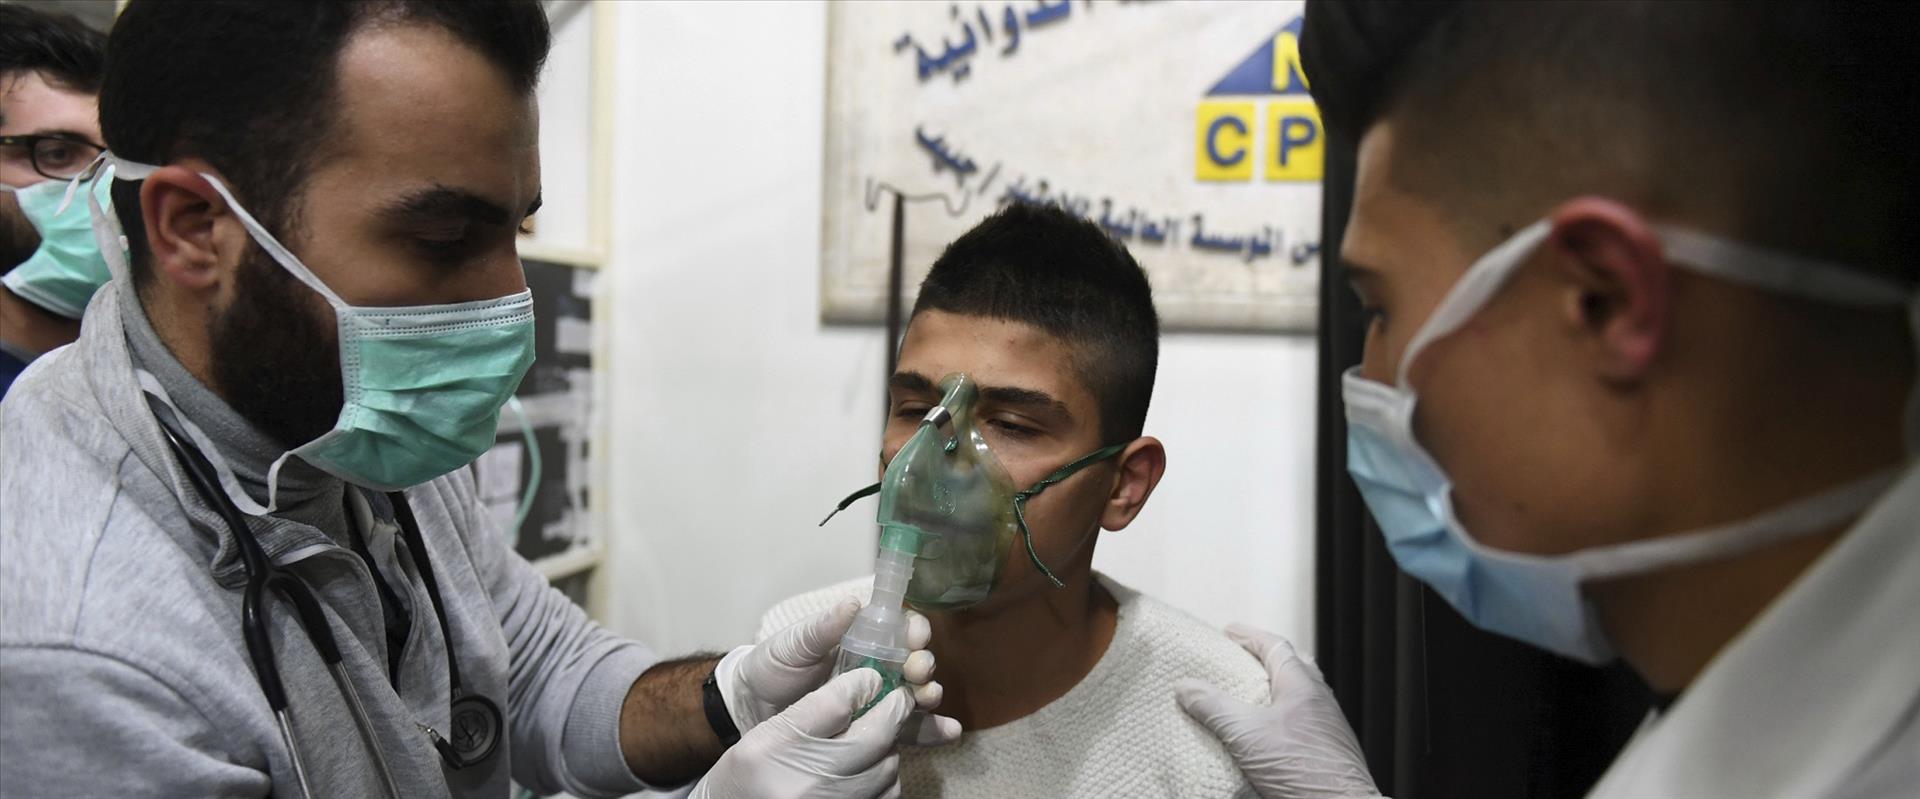 פצועים במתקפה כימית בסוריה